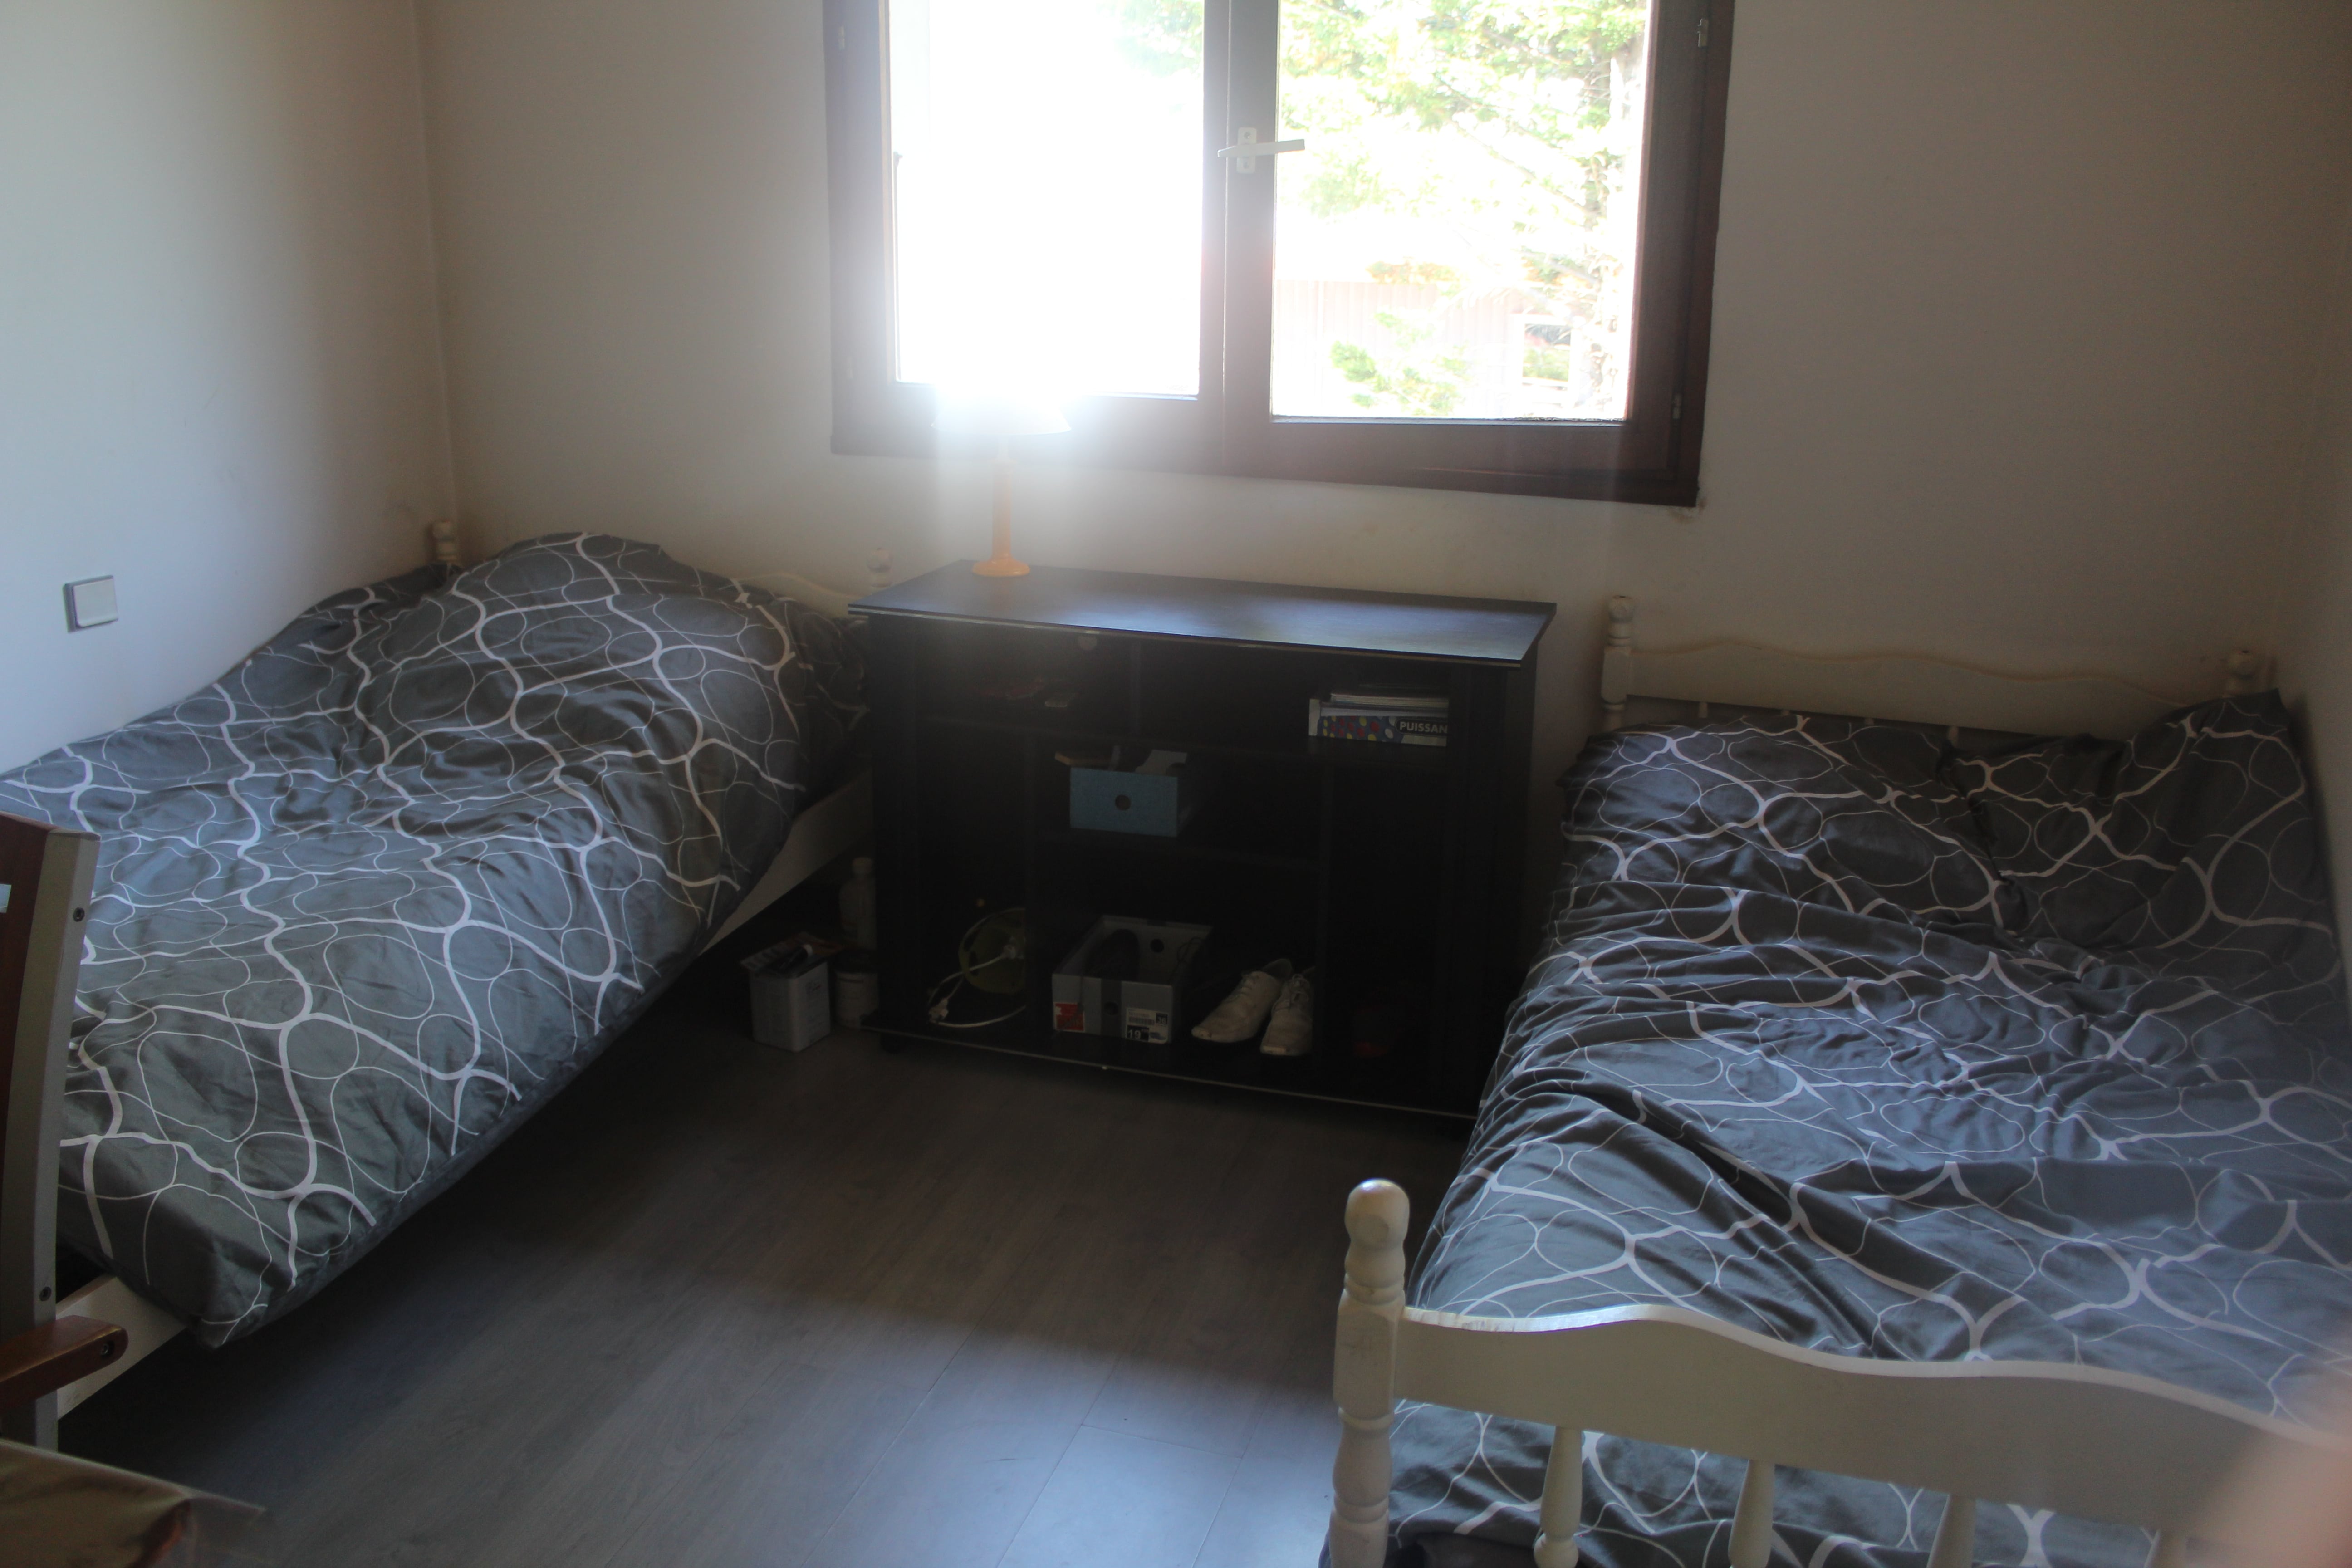 Chambre - 15 m2, 2 lits, pour chaque colocataire par lit -250 euros, ou chambre seule - 410 euros, charges comprises